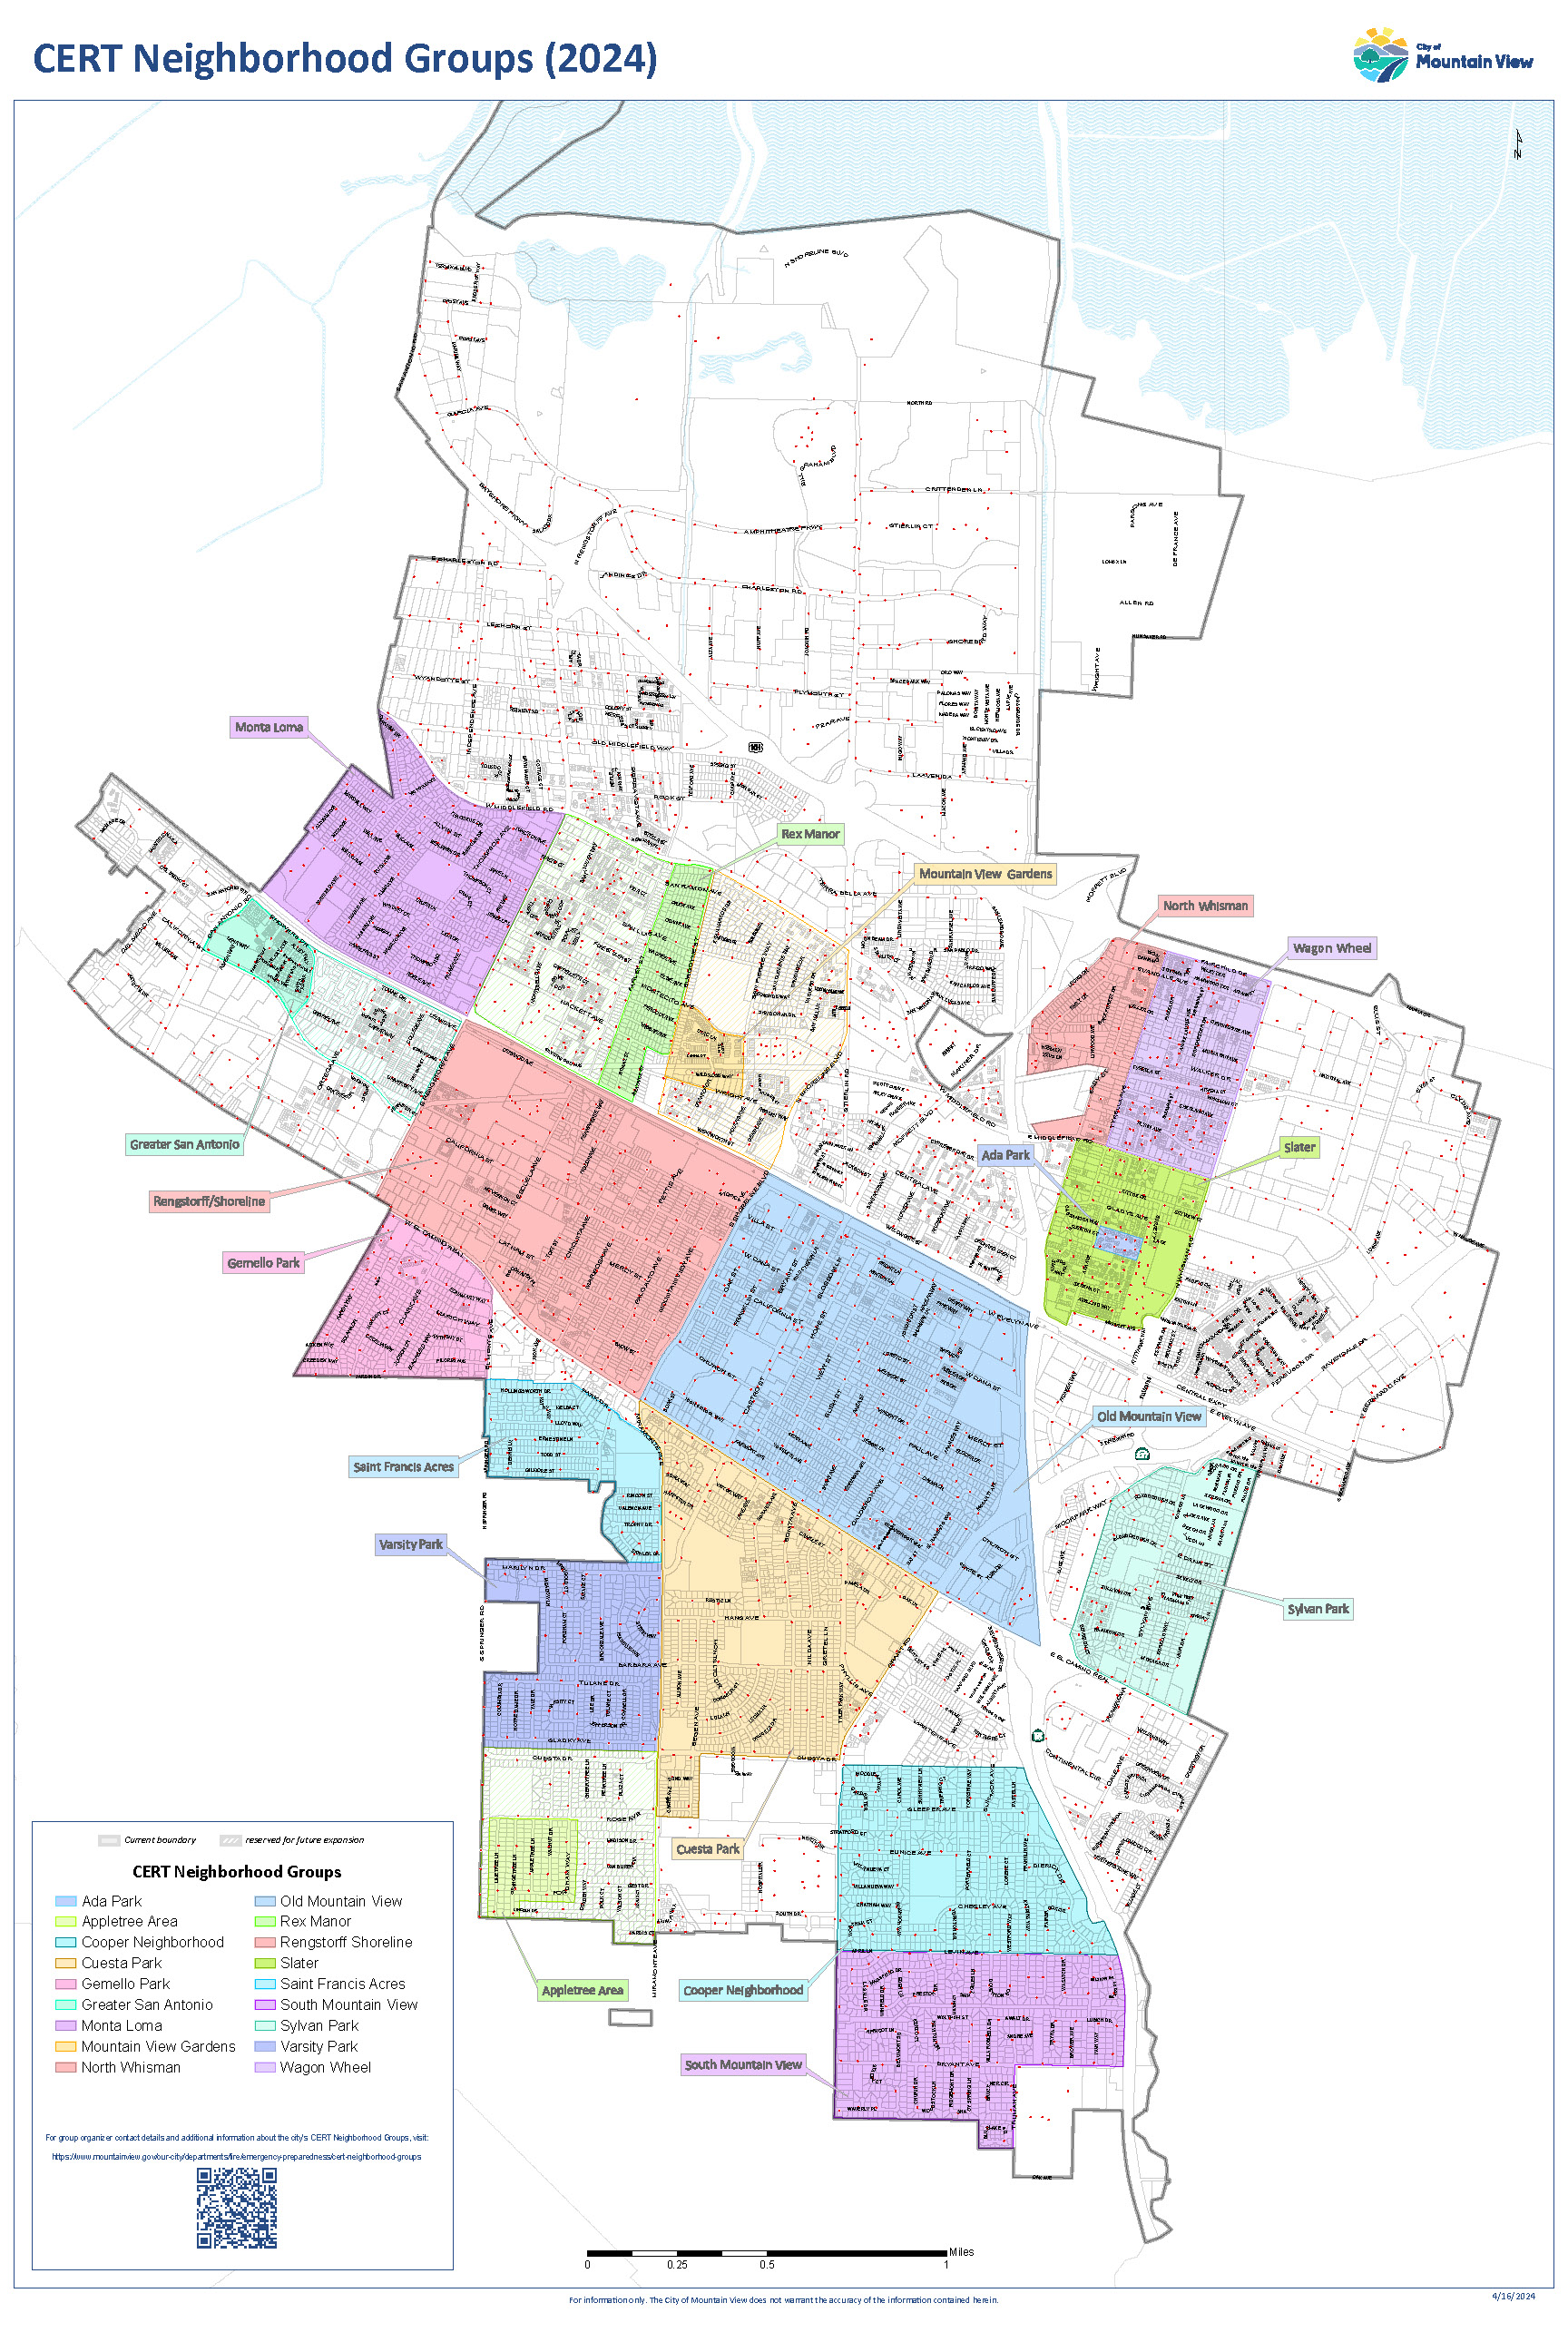 CERT Neighborhoods 2024_embedfonts